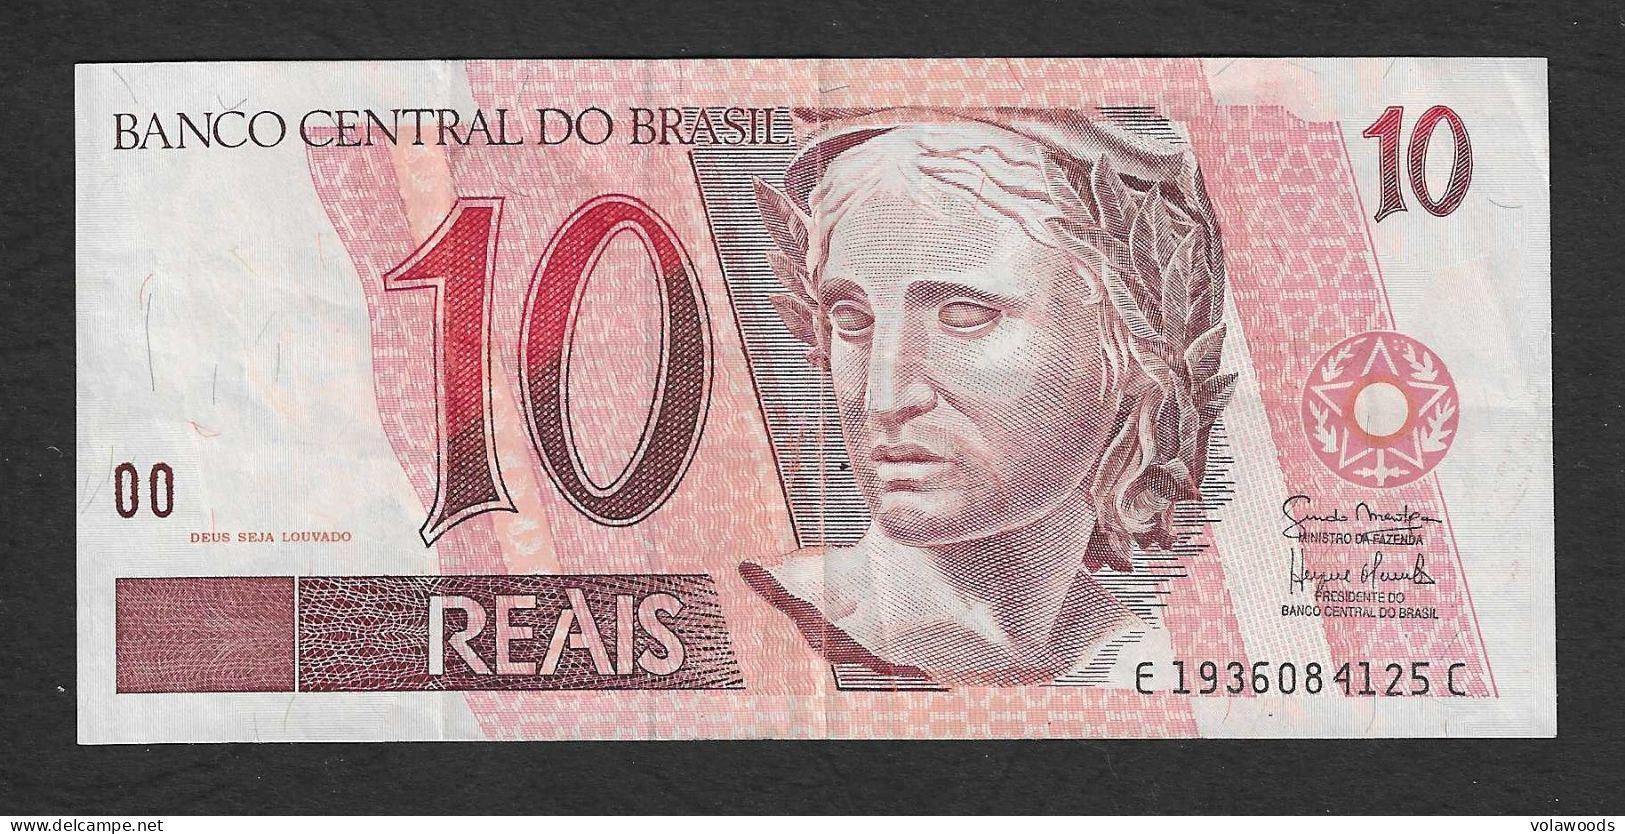 Brasile - Banconota Circolata Da 10 Reals P-245Ak - 1997 #19 - Brasile